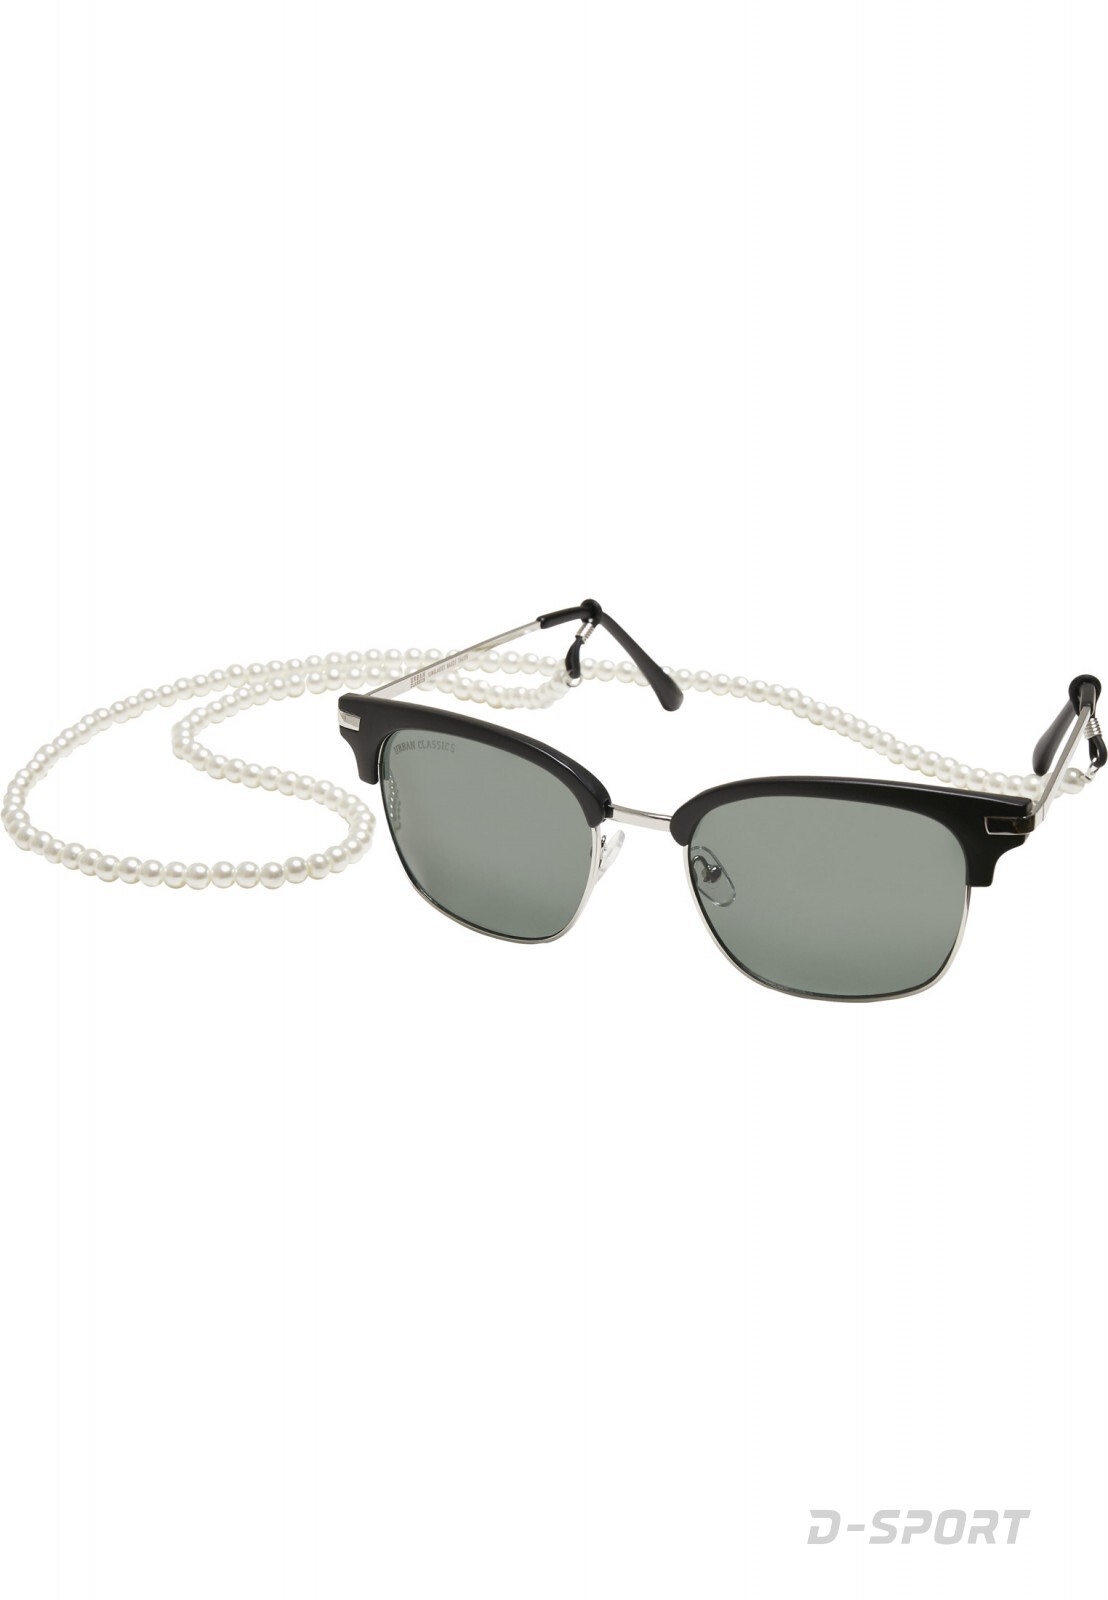 Sunglasses Crete with chain